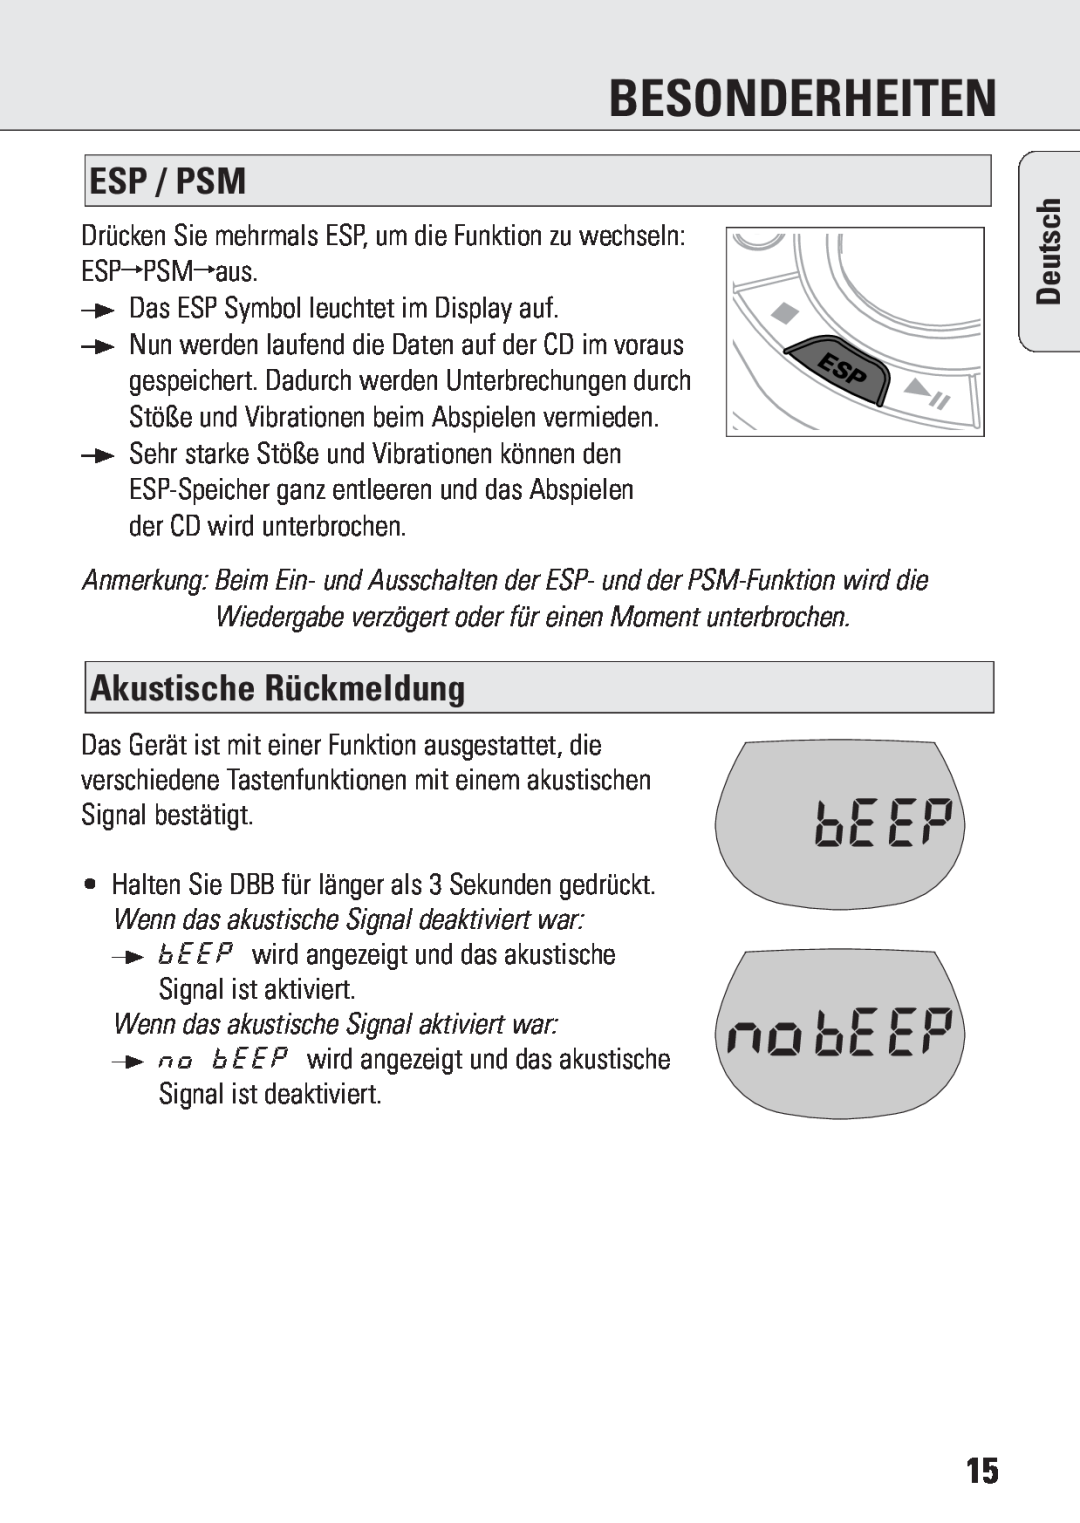 Philips ACT 7583 Esp / Psm, Akustische Rückmeldung, Wenn das akustische Signal aktiviert war, Besonderheiten, Deutsch 